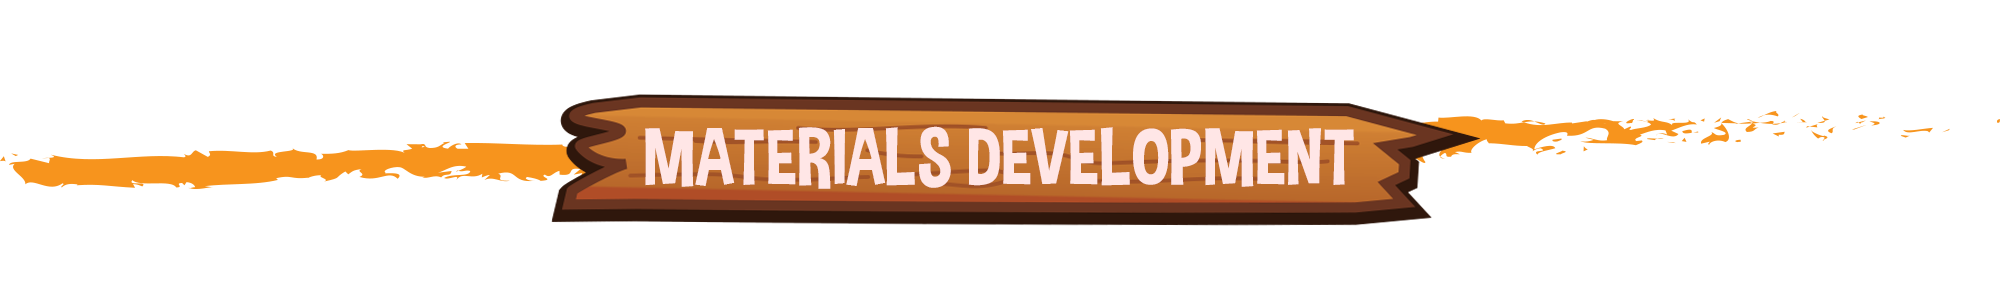 Materials Development